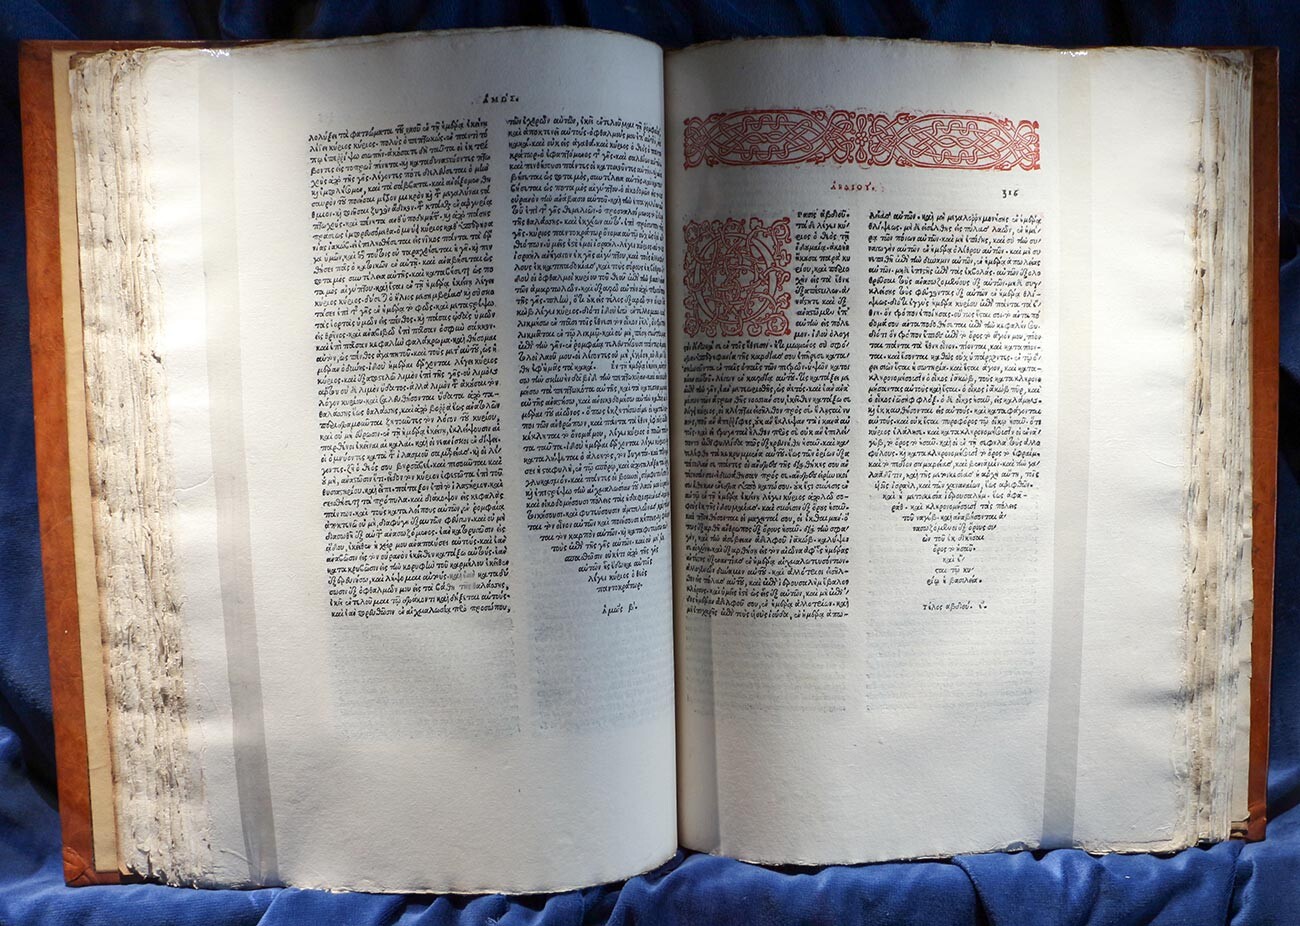 L’Edizione Aldina (curata da Aldo Manuzio) della Bibbia greca, pubblicata a Venezia nel 1518. Fu la prima edizione edita completamente in greco, con il Vecchio Testamento nella “Versione dei Settanta” (“Septuaginta”) 